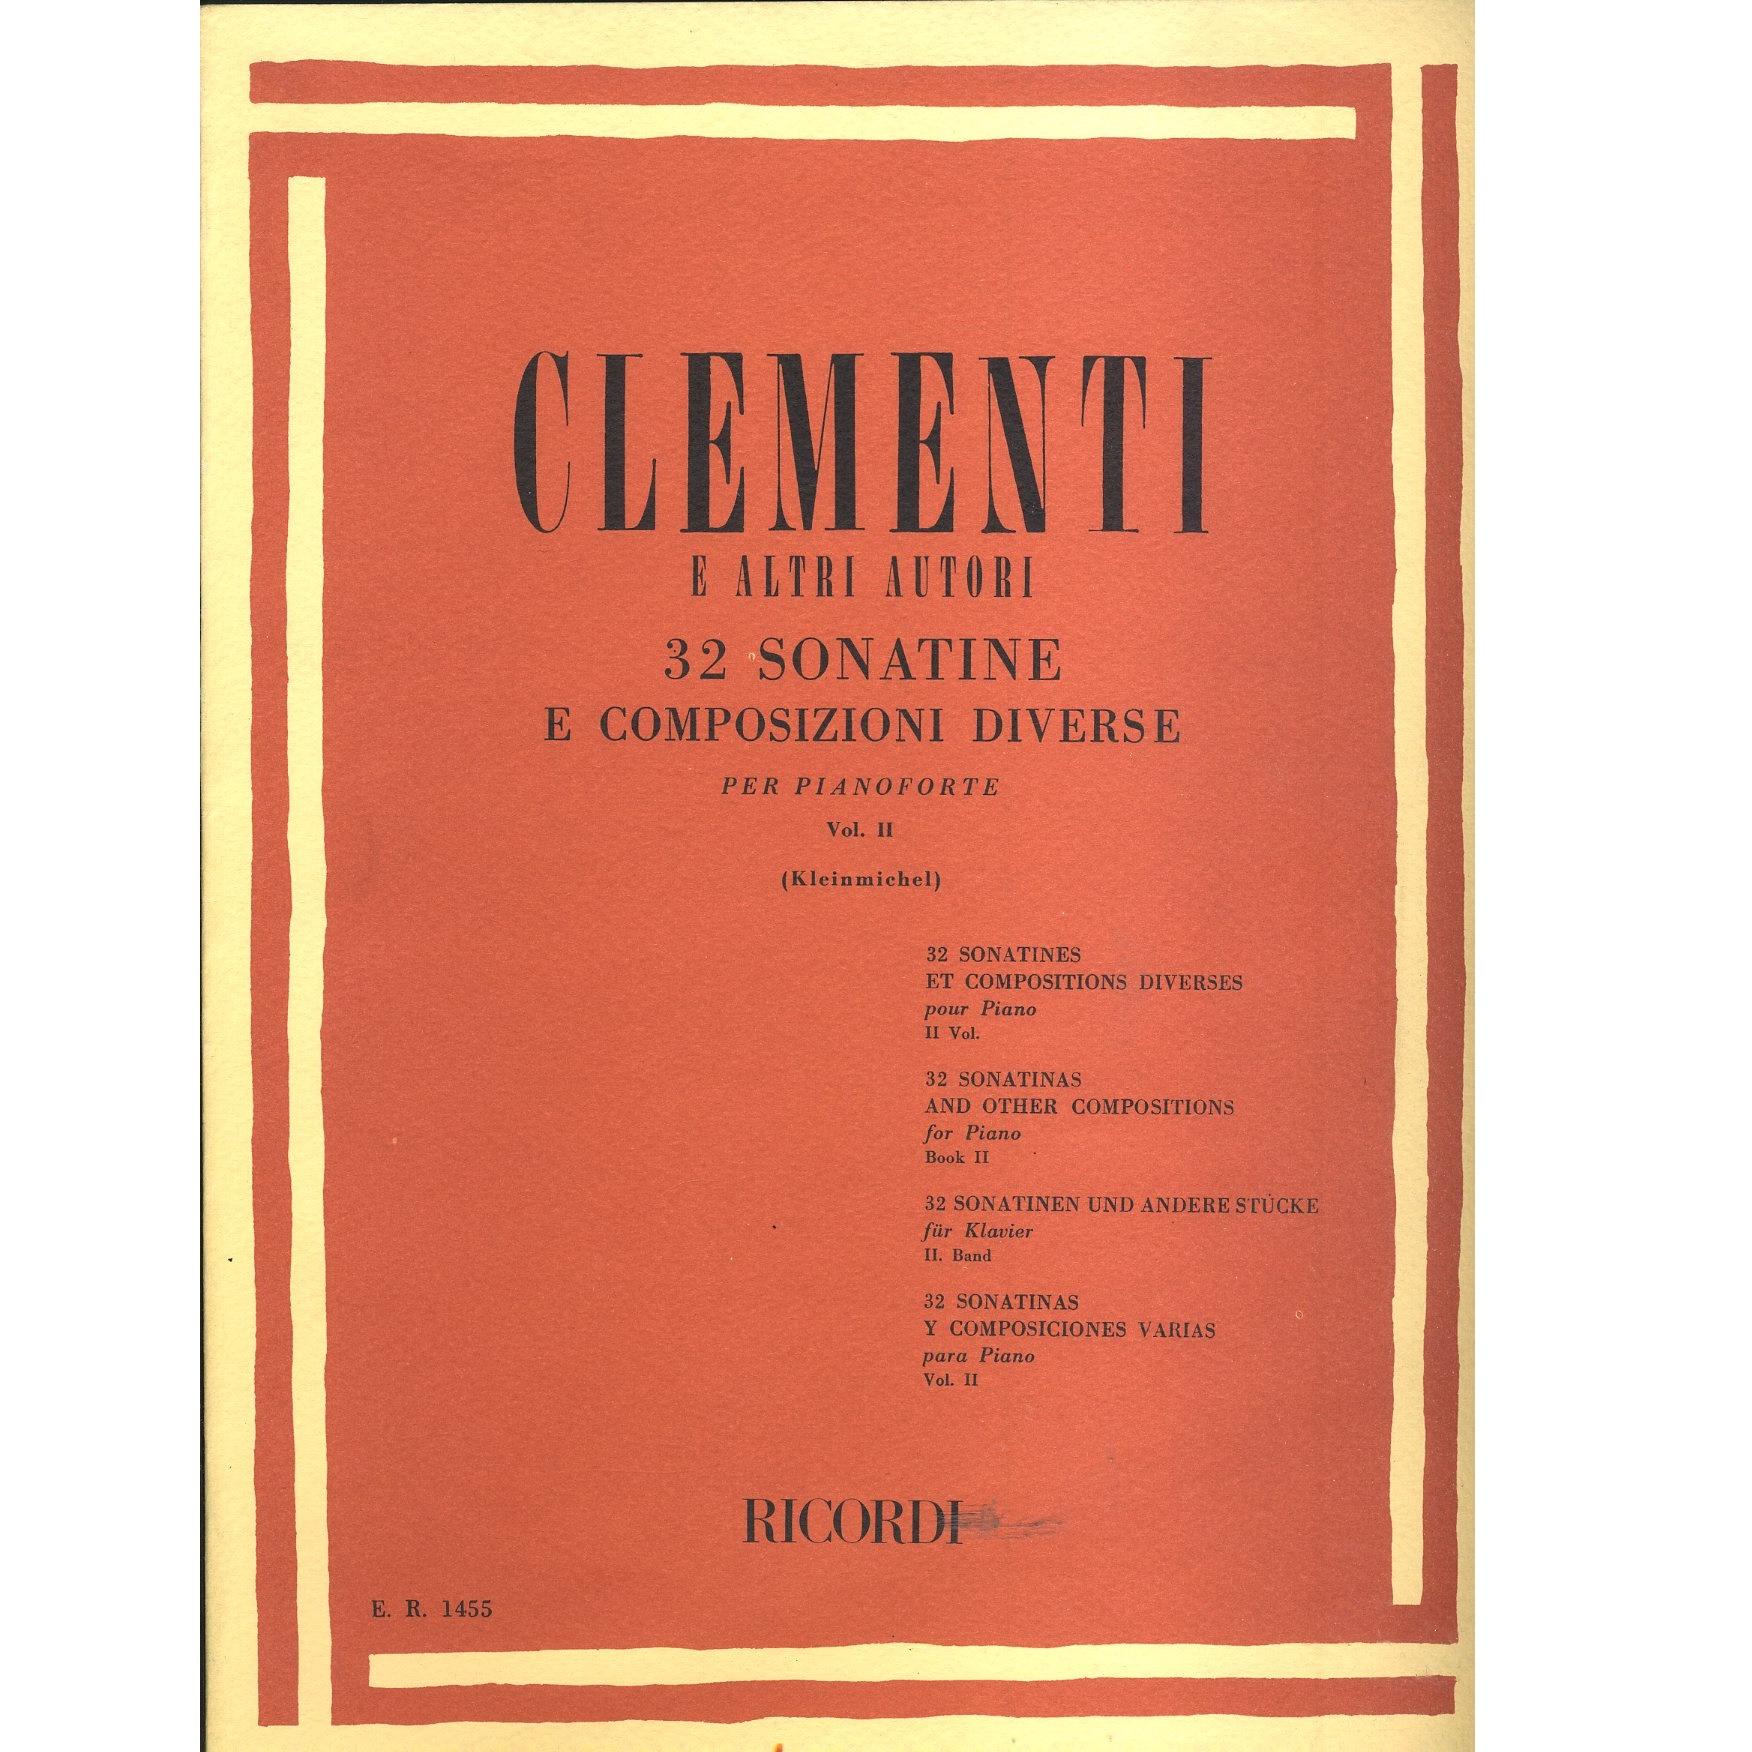 Clementi 32 Sonatine e composizioni diverse per pianoforte vol. II (Kleinmichel) - Ricordi